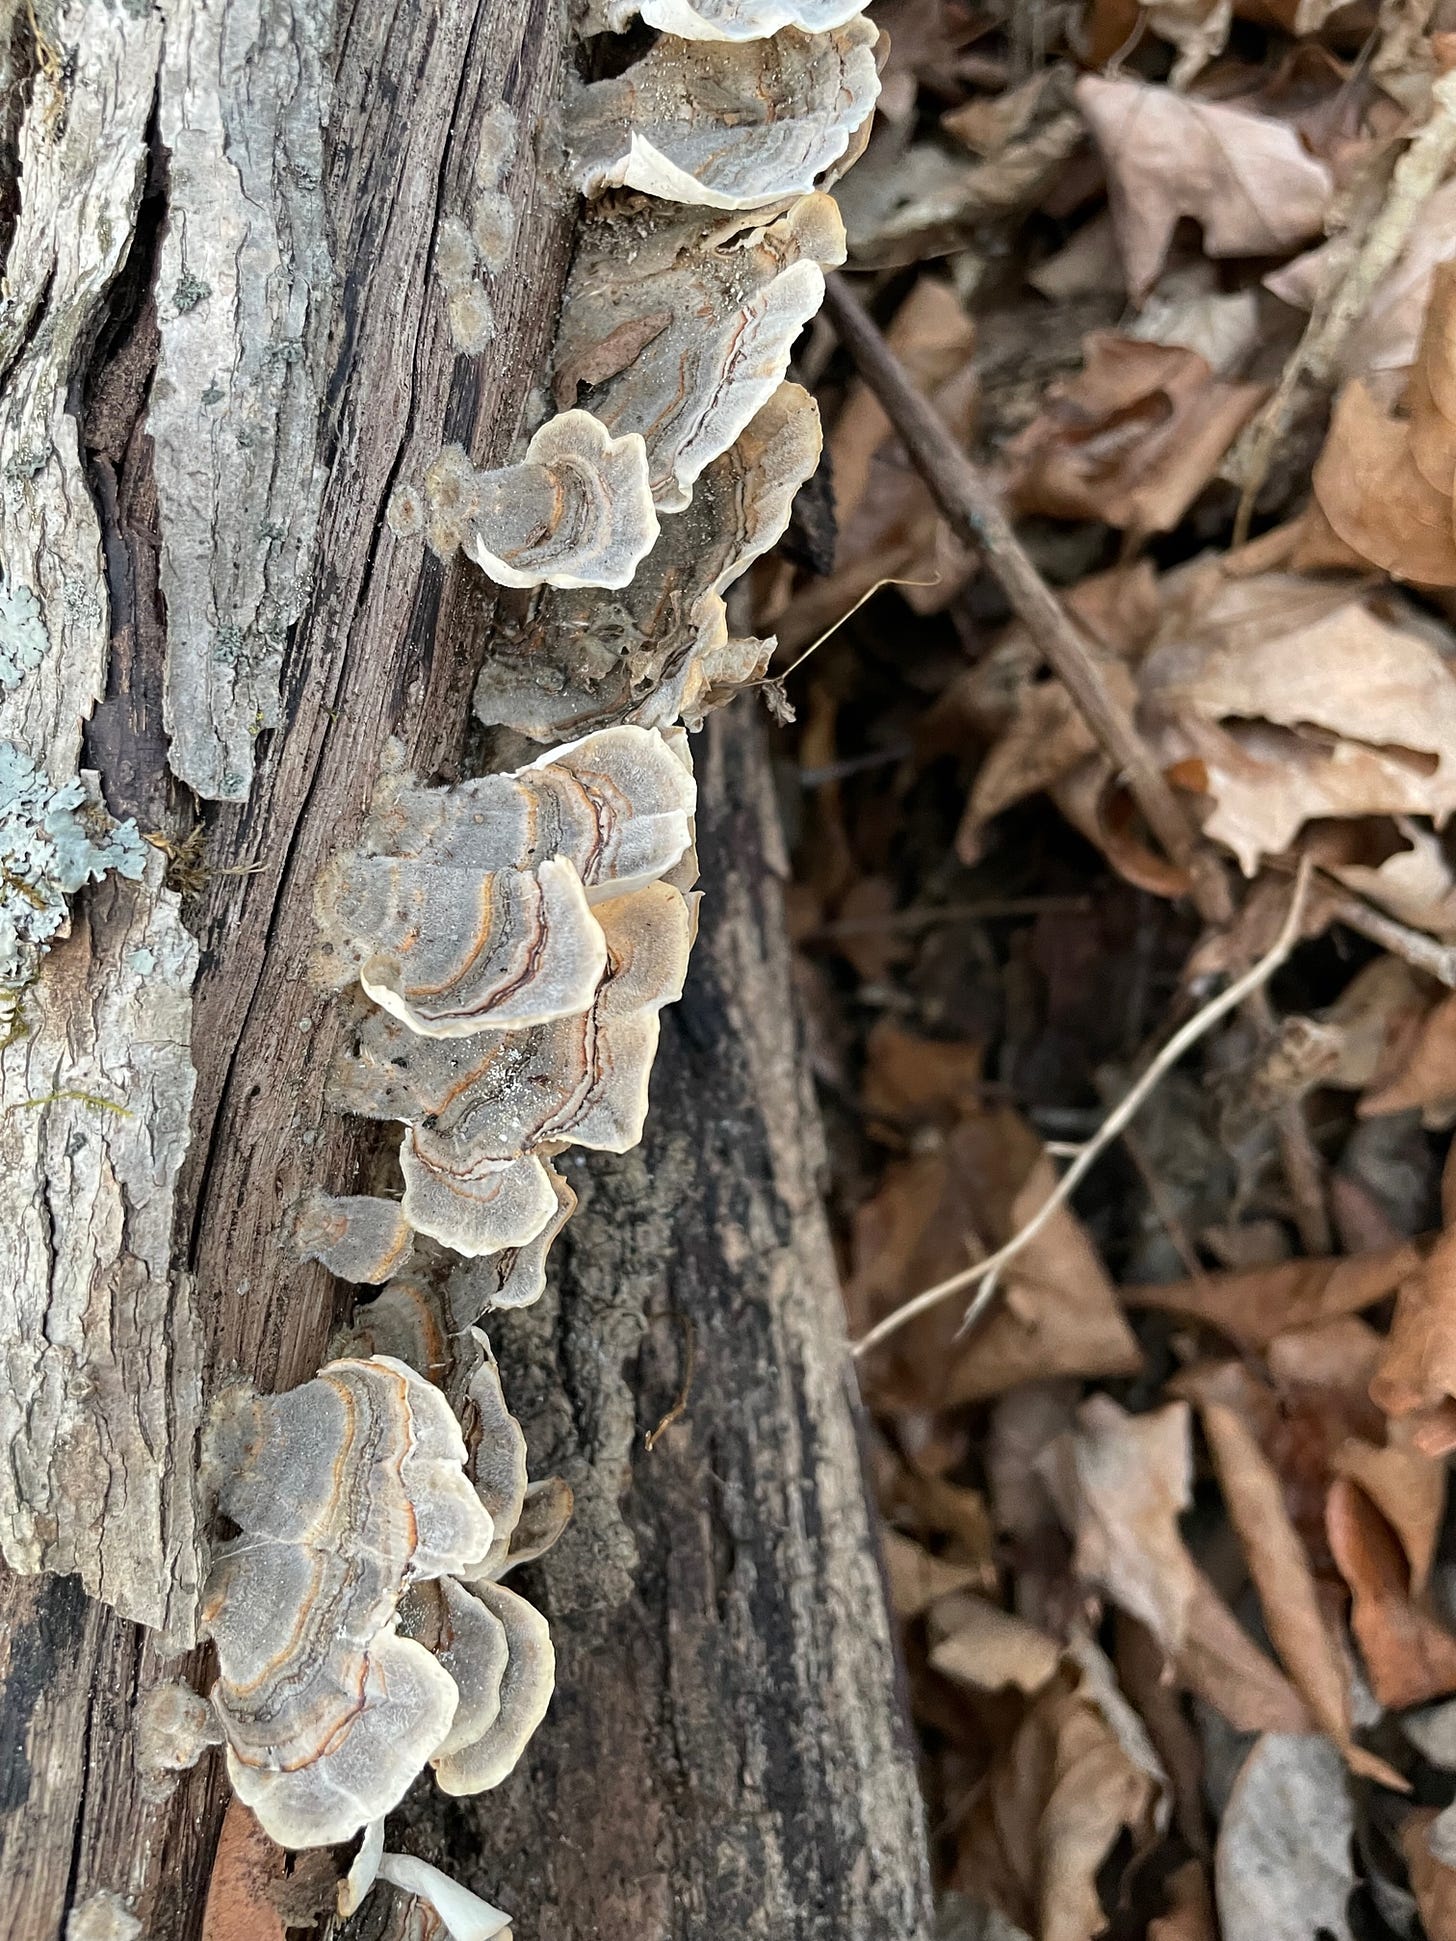 Turkeytail mushrooms 